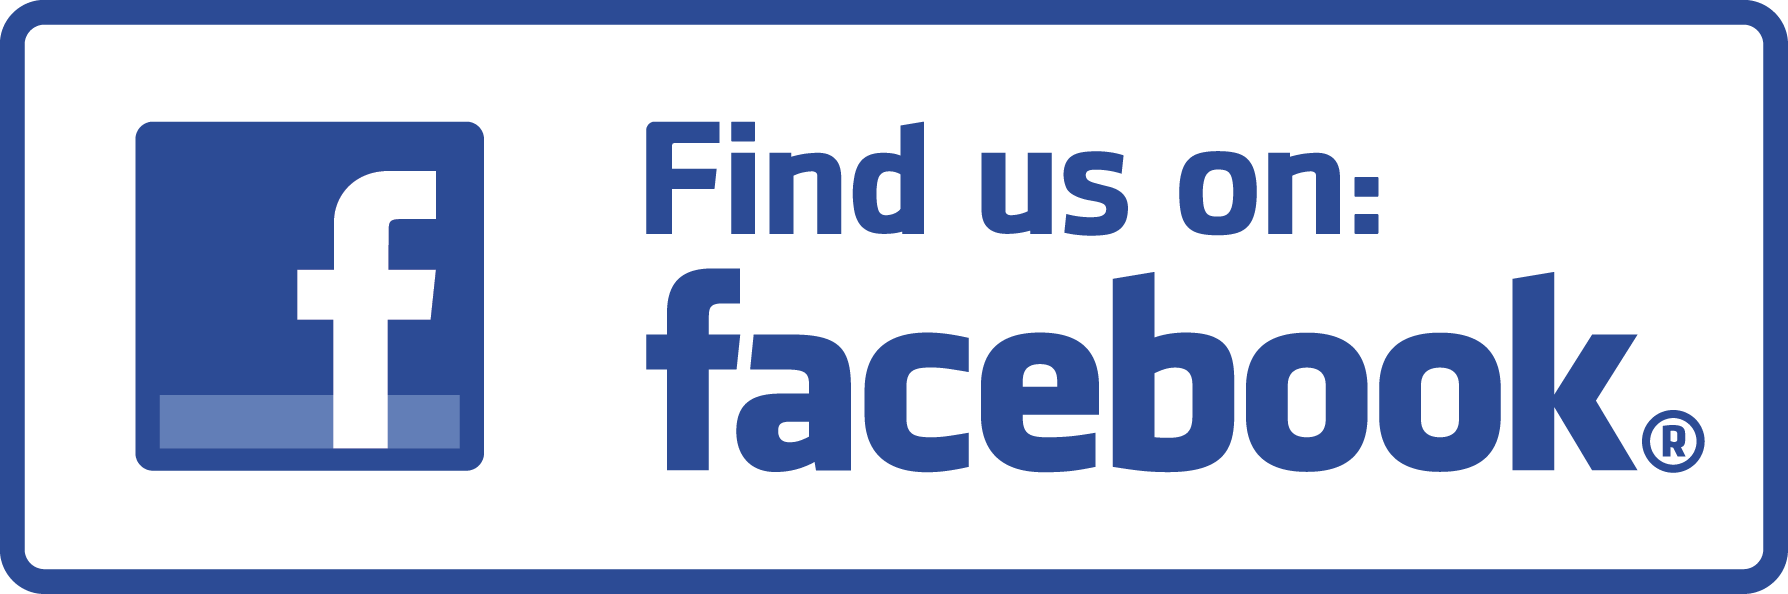 Zapraszamy do polubienia naszego profilu w serwisie Facebook https://www.facebook.com/profile.php?id=61550661346175